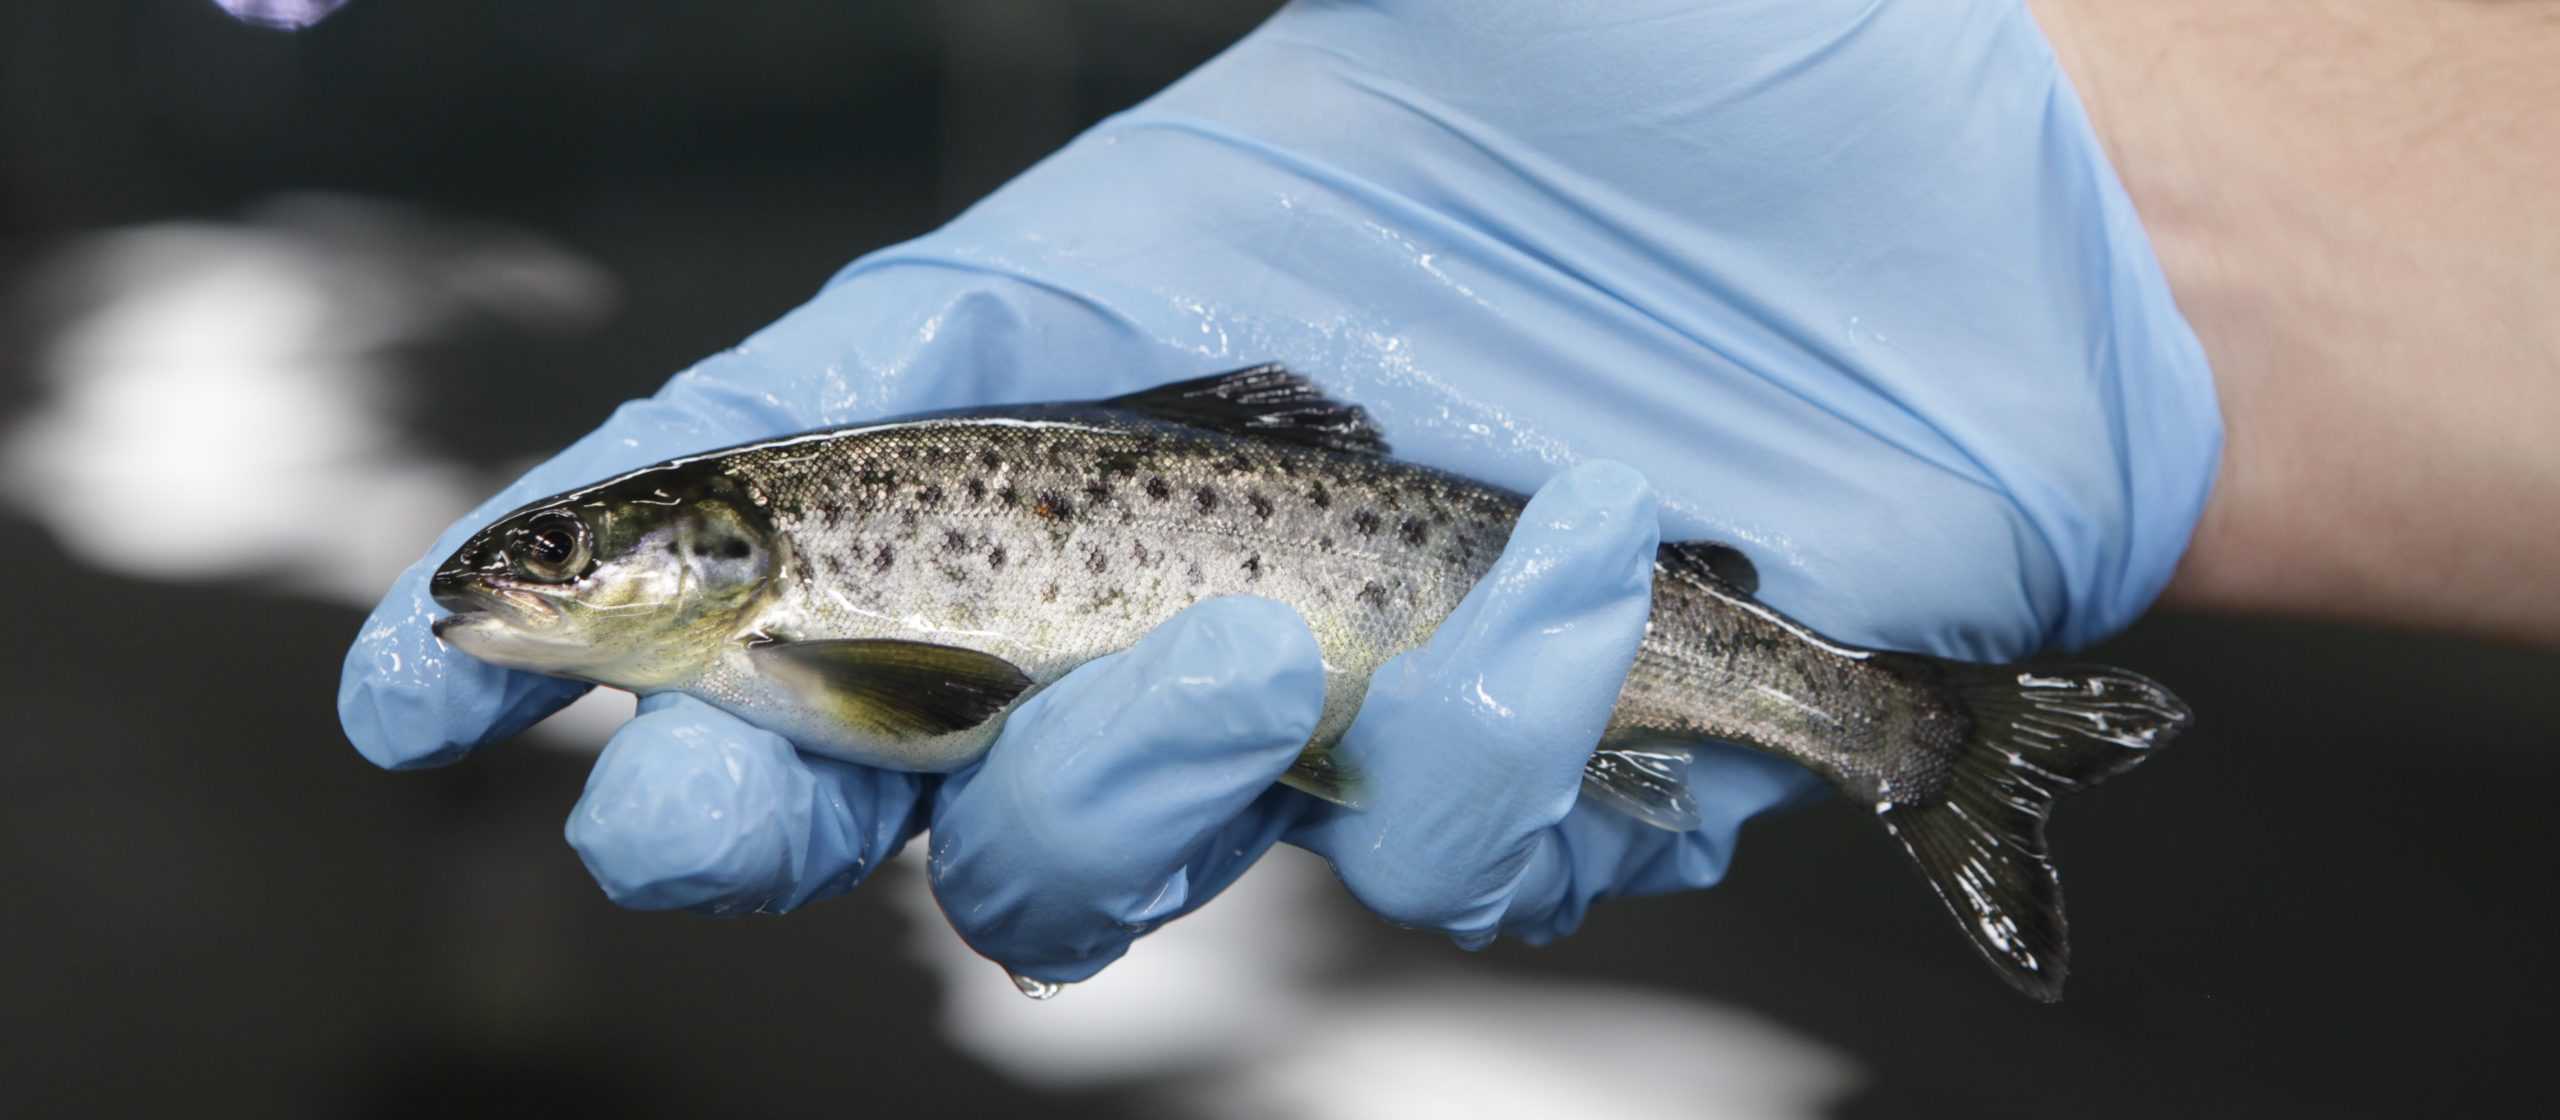 Salmonicultura chilena muestra importante avance en reducción de uso de antibióticos